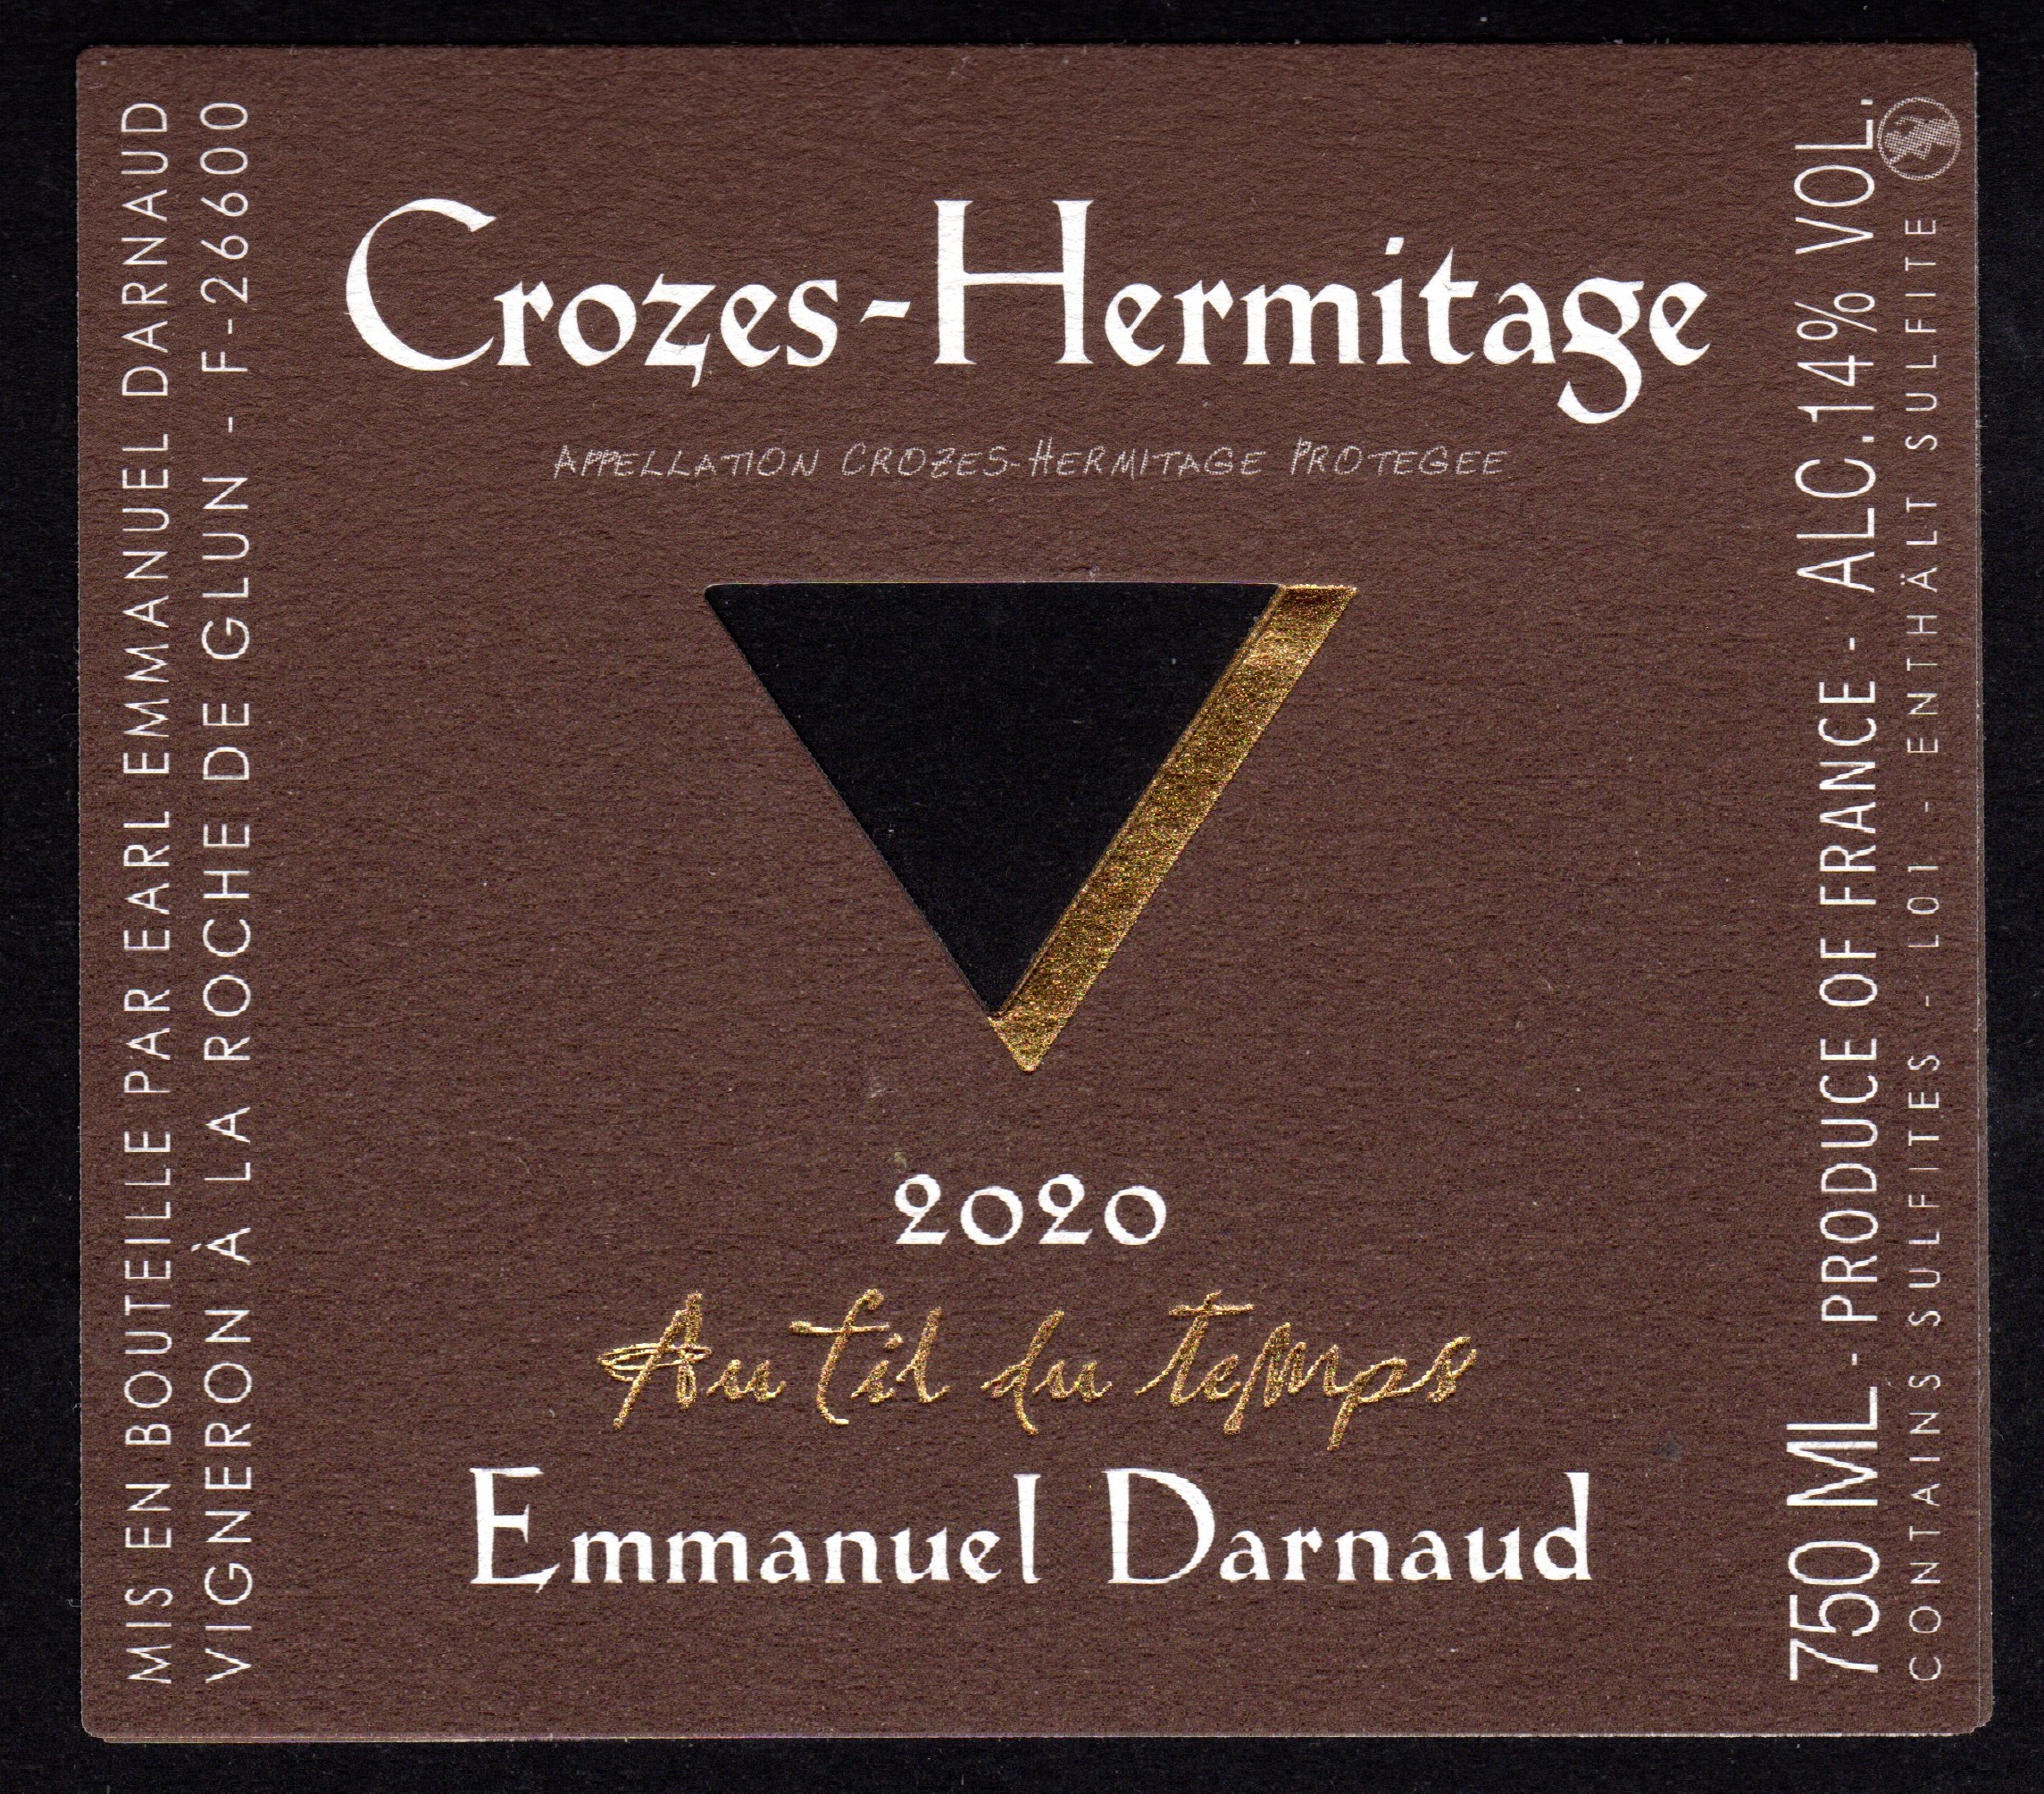 Crozes Hermitage Rouge 2019